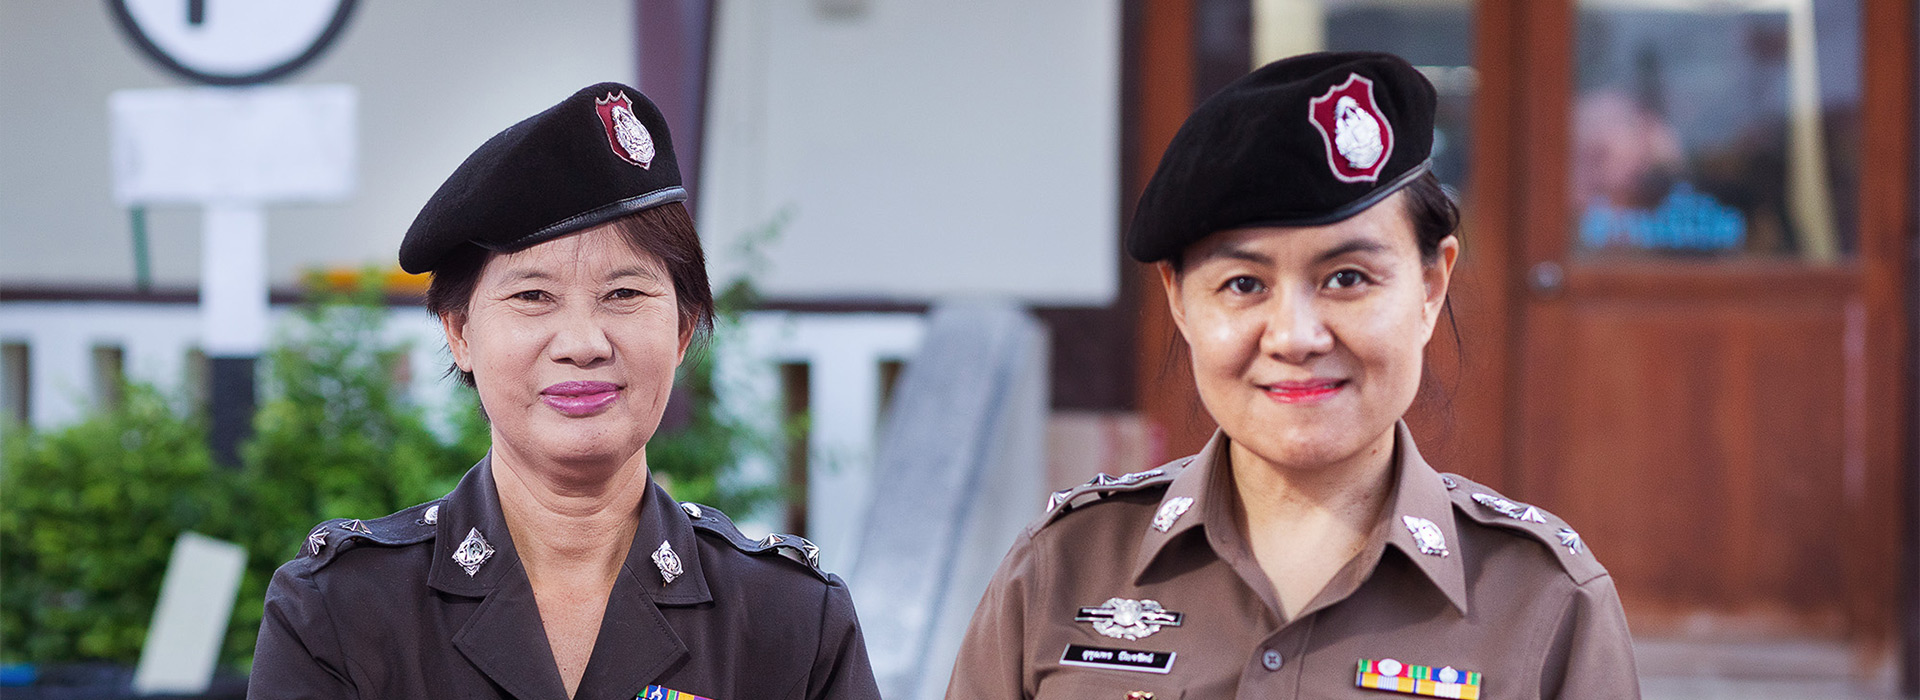 Zwei lächelnde Polizistinnen mit vielen Abzeichen.